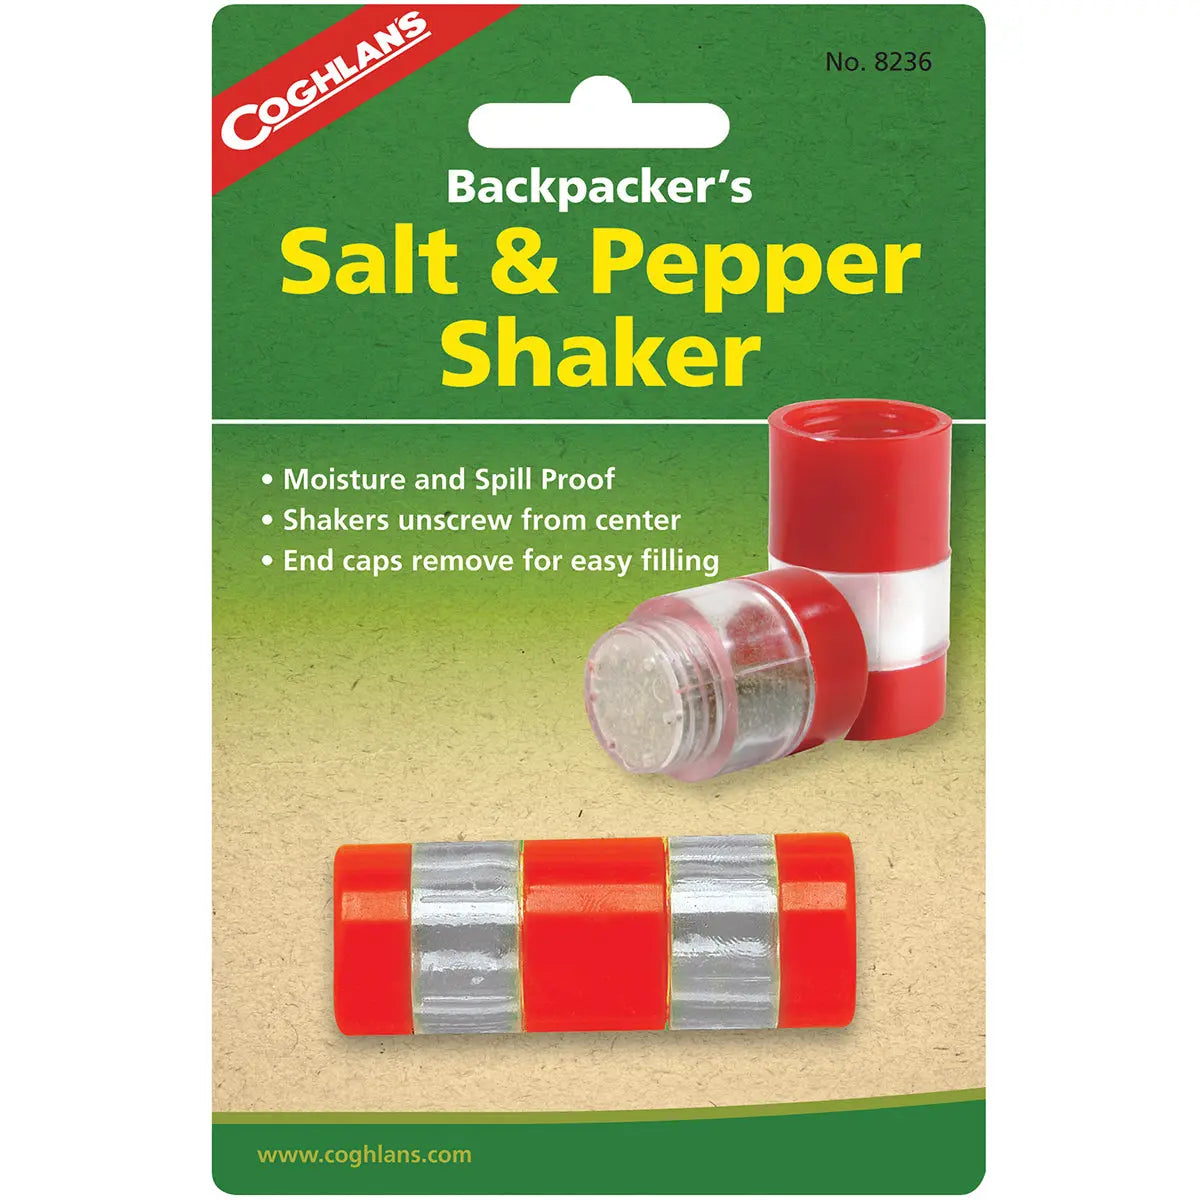 Coghlan's Backpacker's Salt & Pepper Shaker, Moisture and Spill Proof, Camping Coghlan's